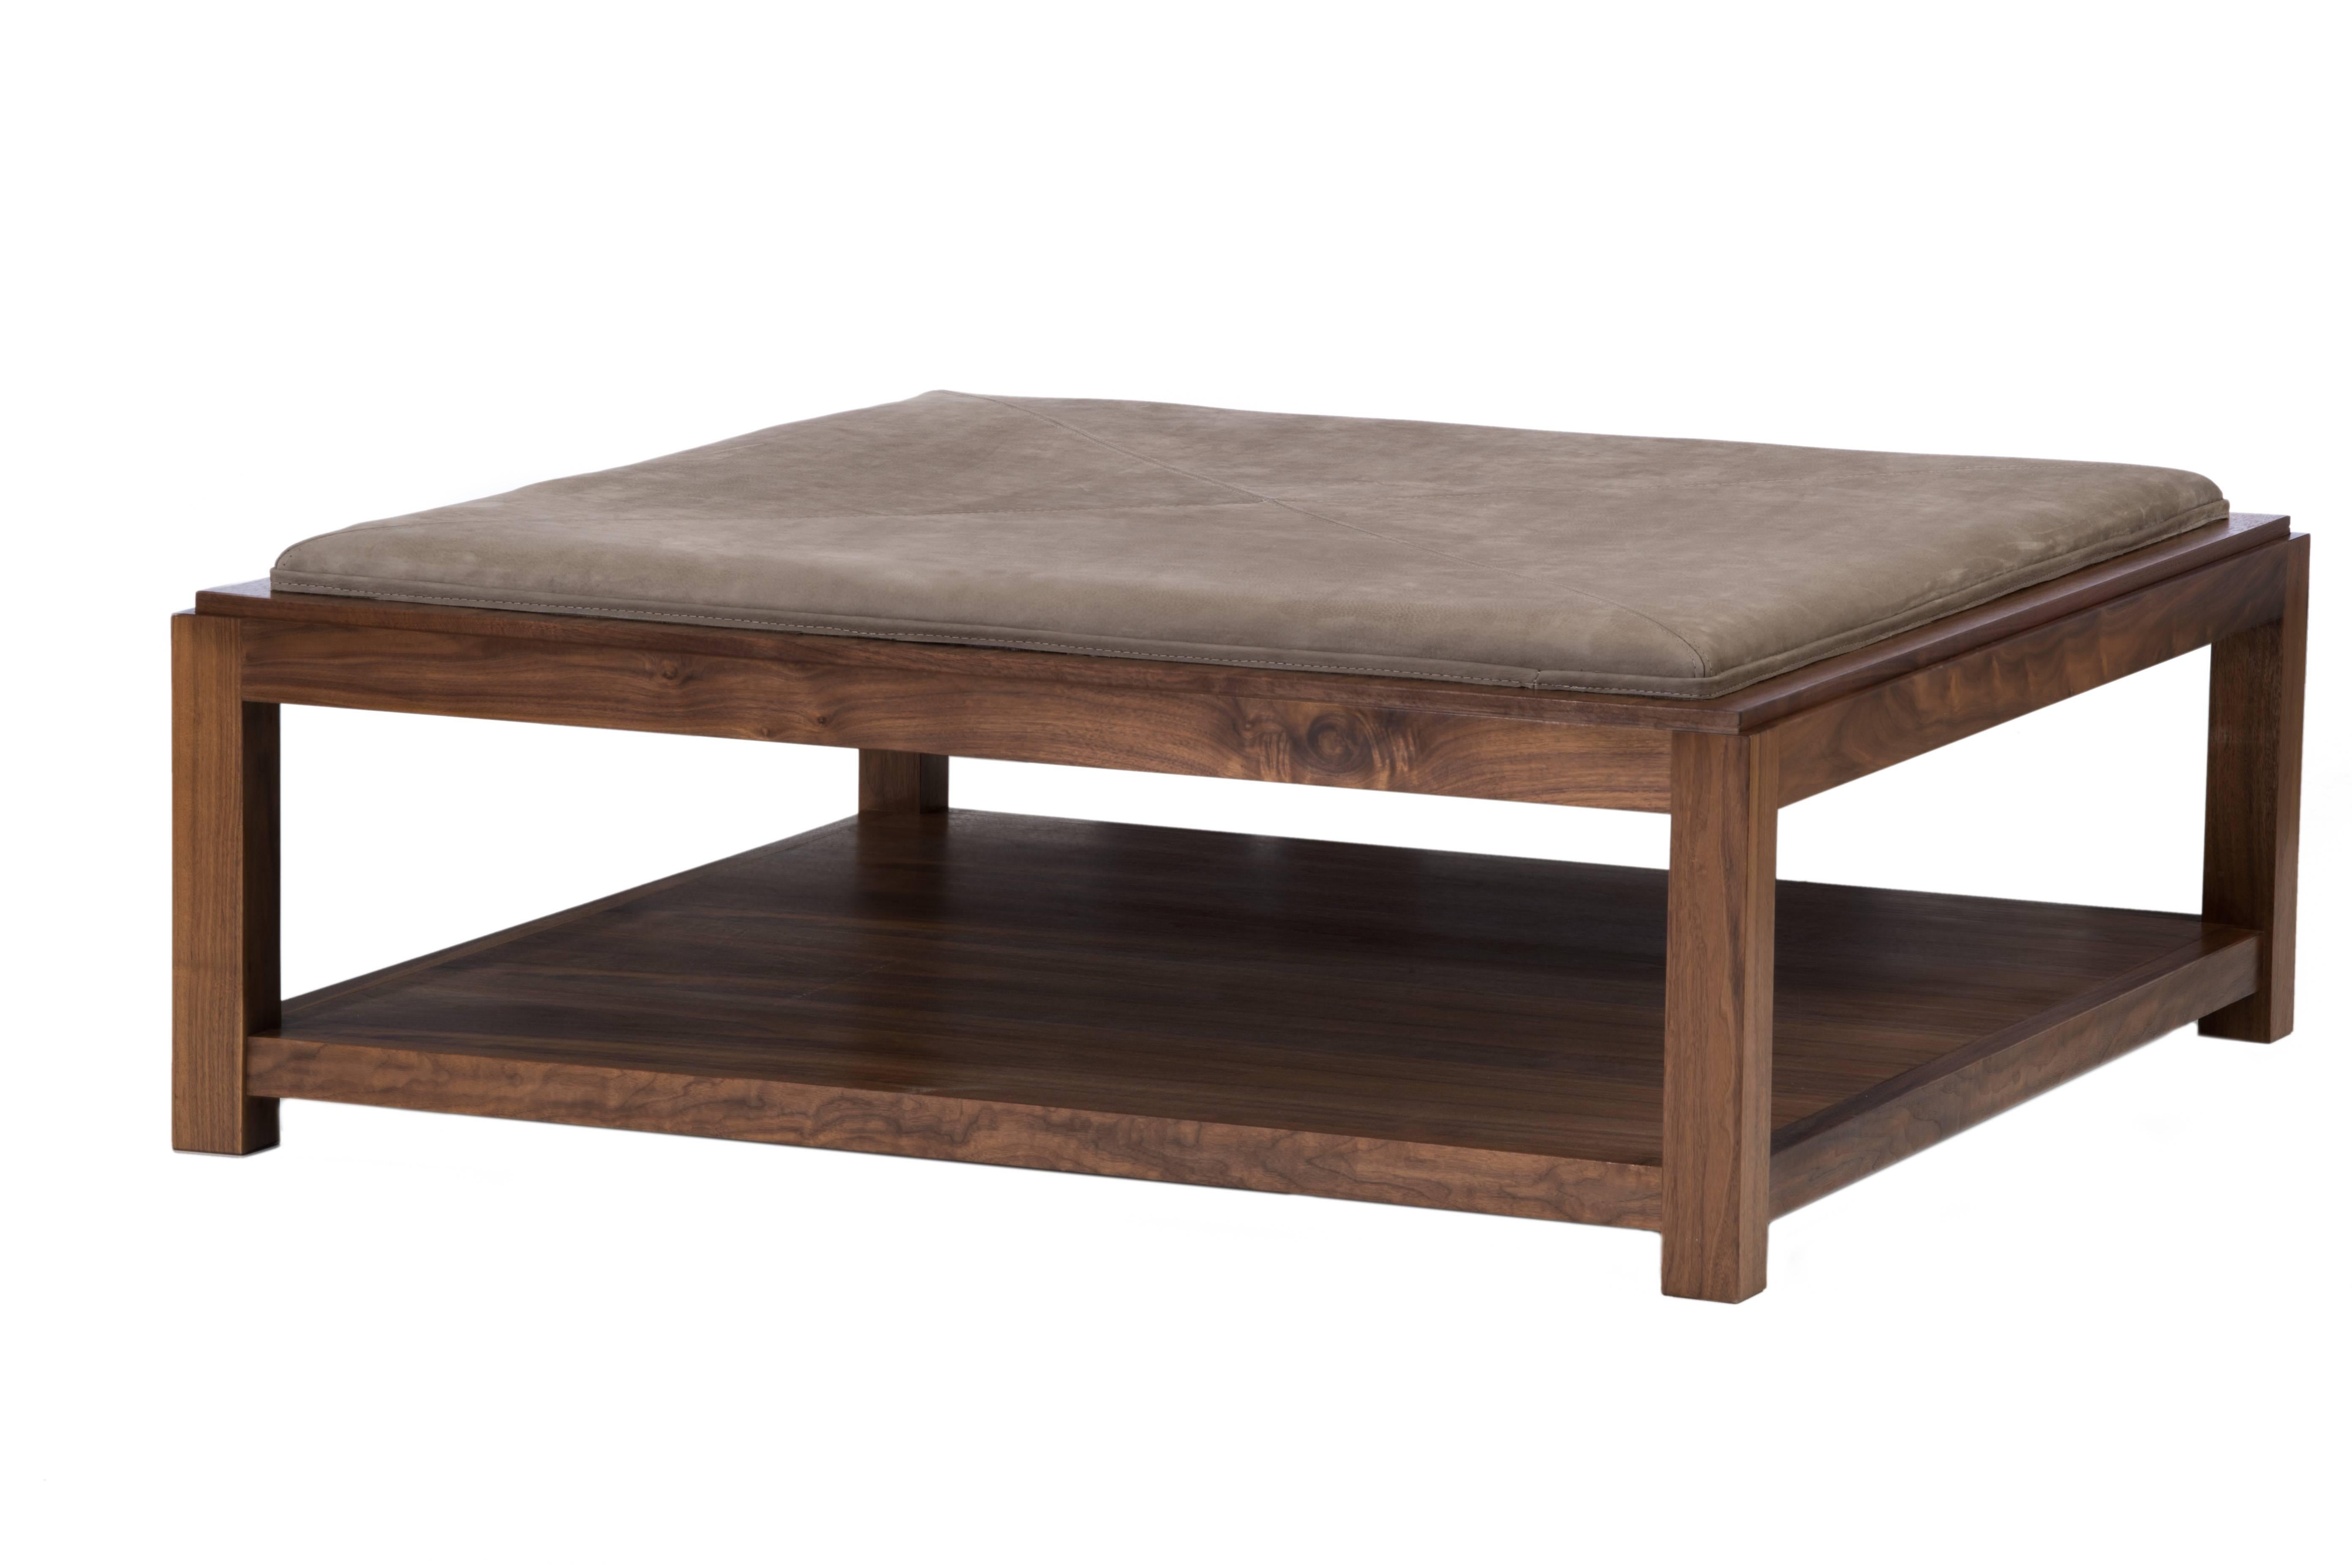 Conçue par Ashley Yeates, la table basse Landon est fabriquée à la main aux États-Unis. La pièce idéale pour les esprits indécis qui recherchent la fonctionnalité et le confort sans sacrifier le style. Le pouf Landon est polyvalent avec son plateau